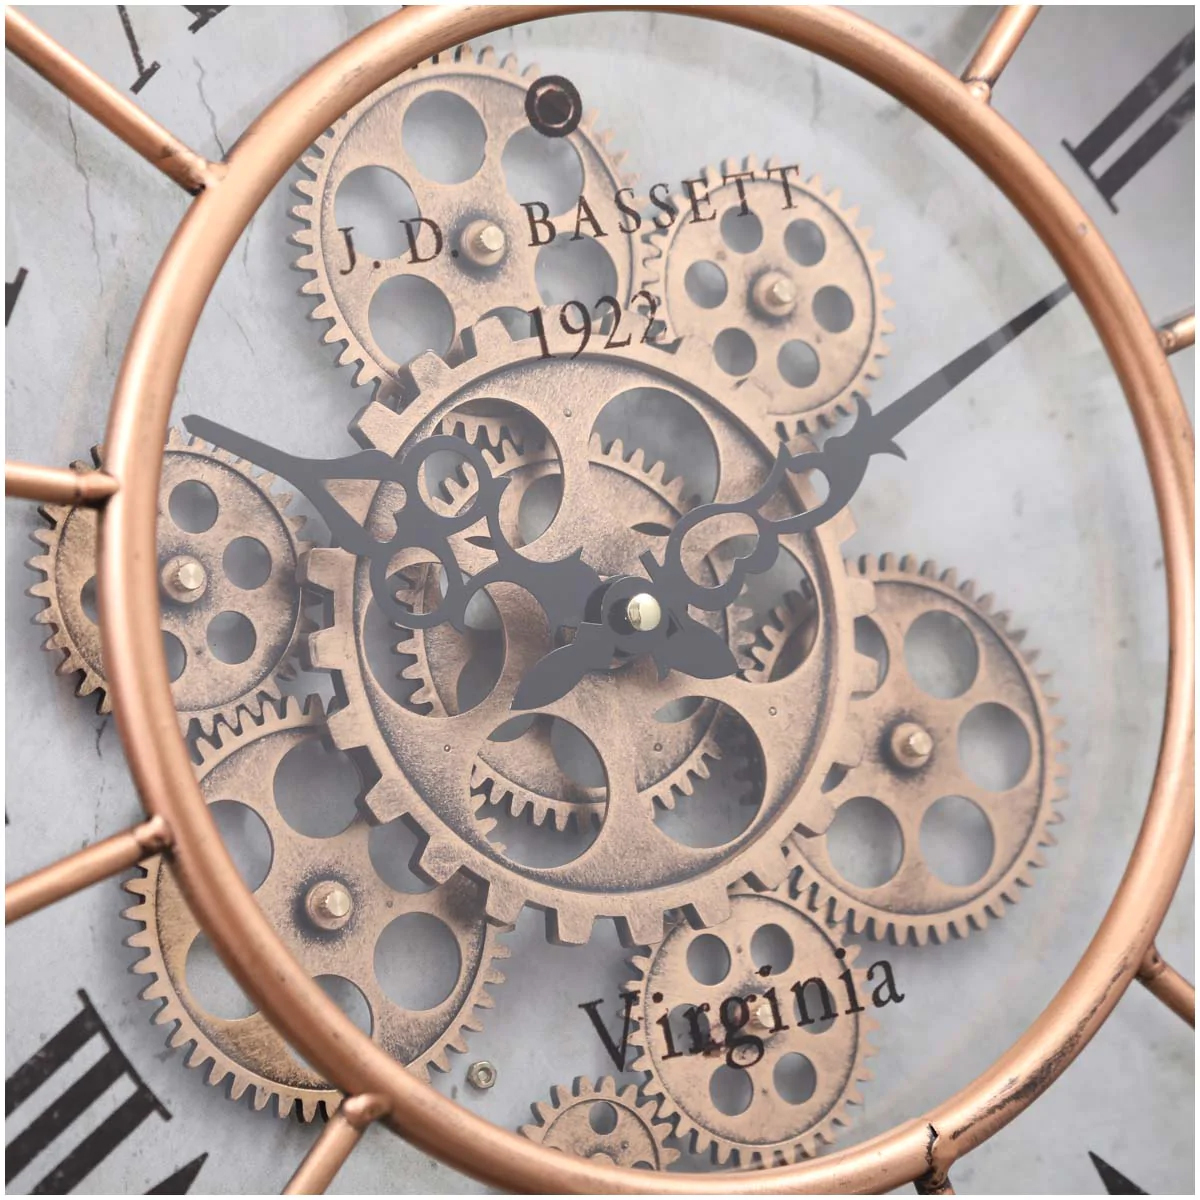 ساعة مسننات Gear Clock Y685